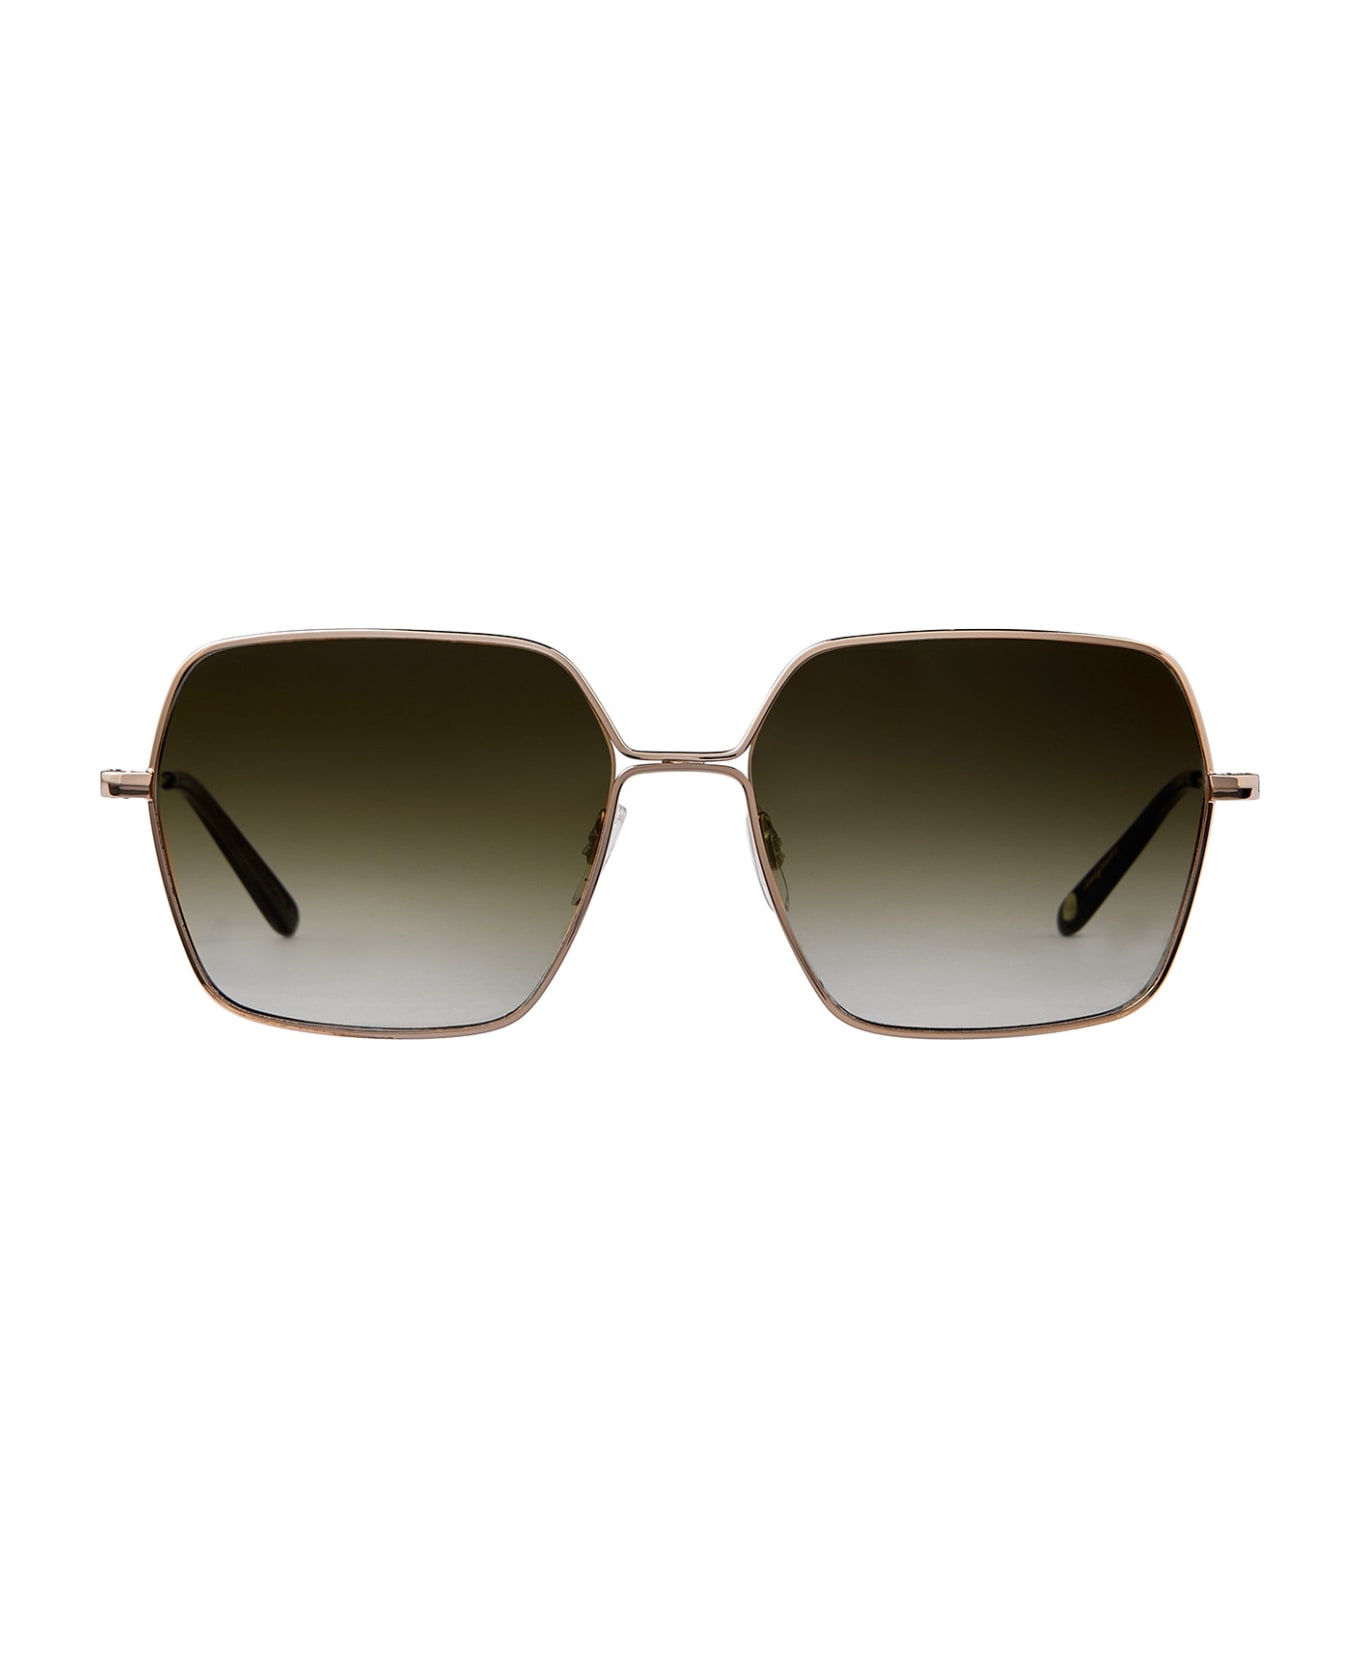 Garrett Leight Meadow Sun Gold-douglas Fir/olive Gradient Sunglasses - Gold-Douglas Fir/Olive Gradient